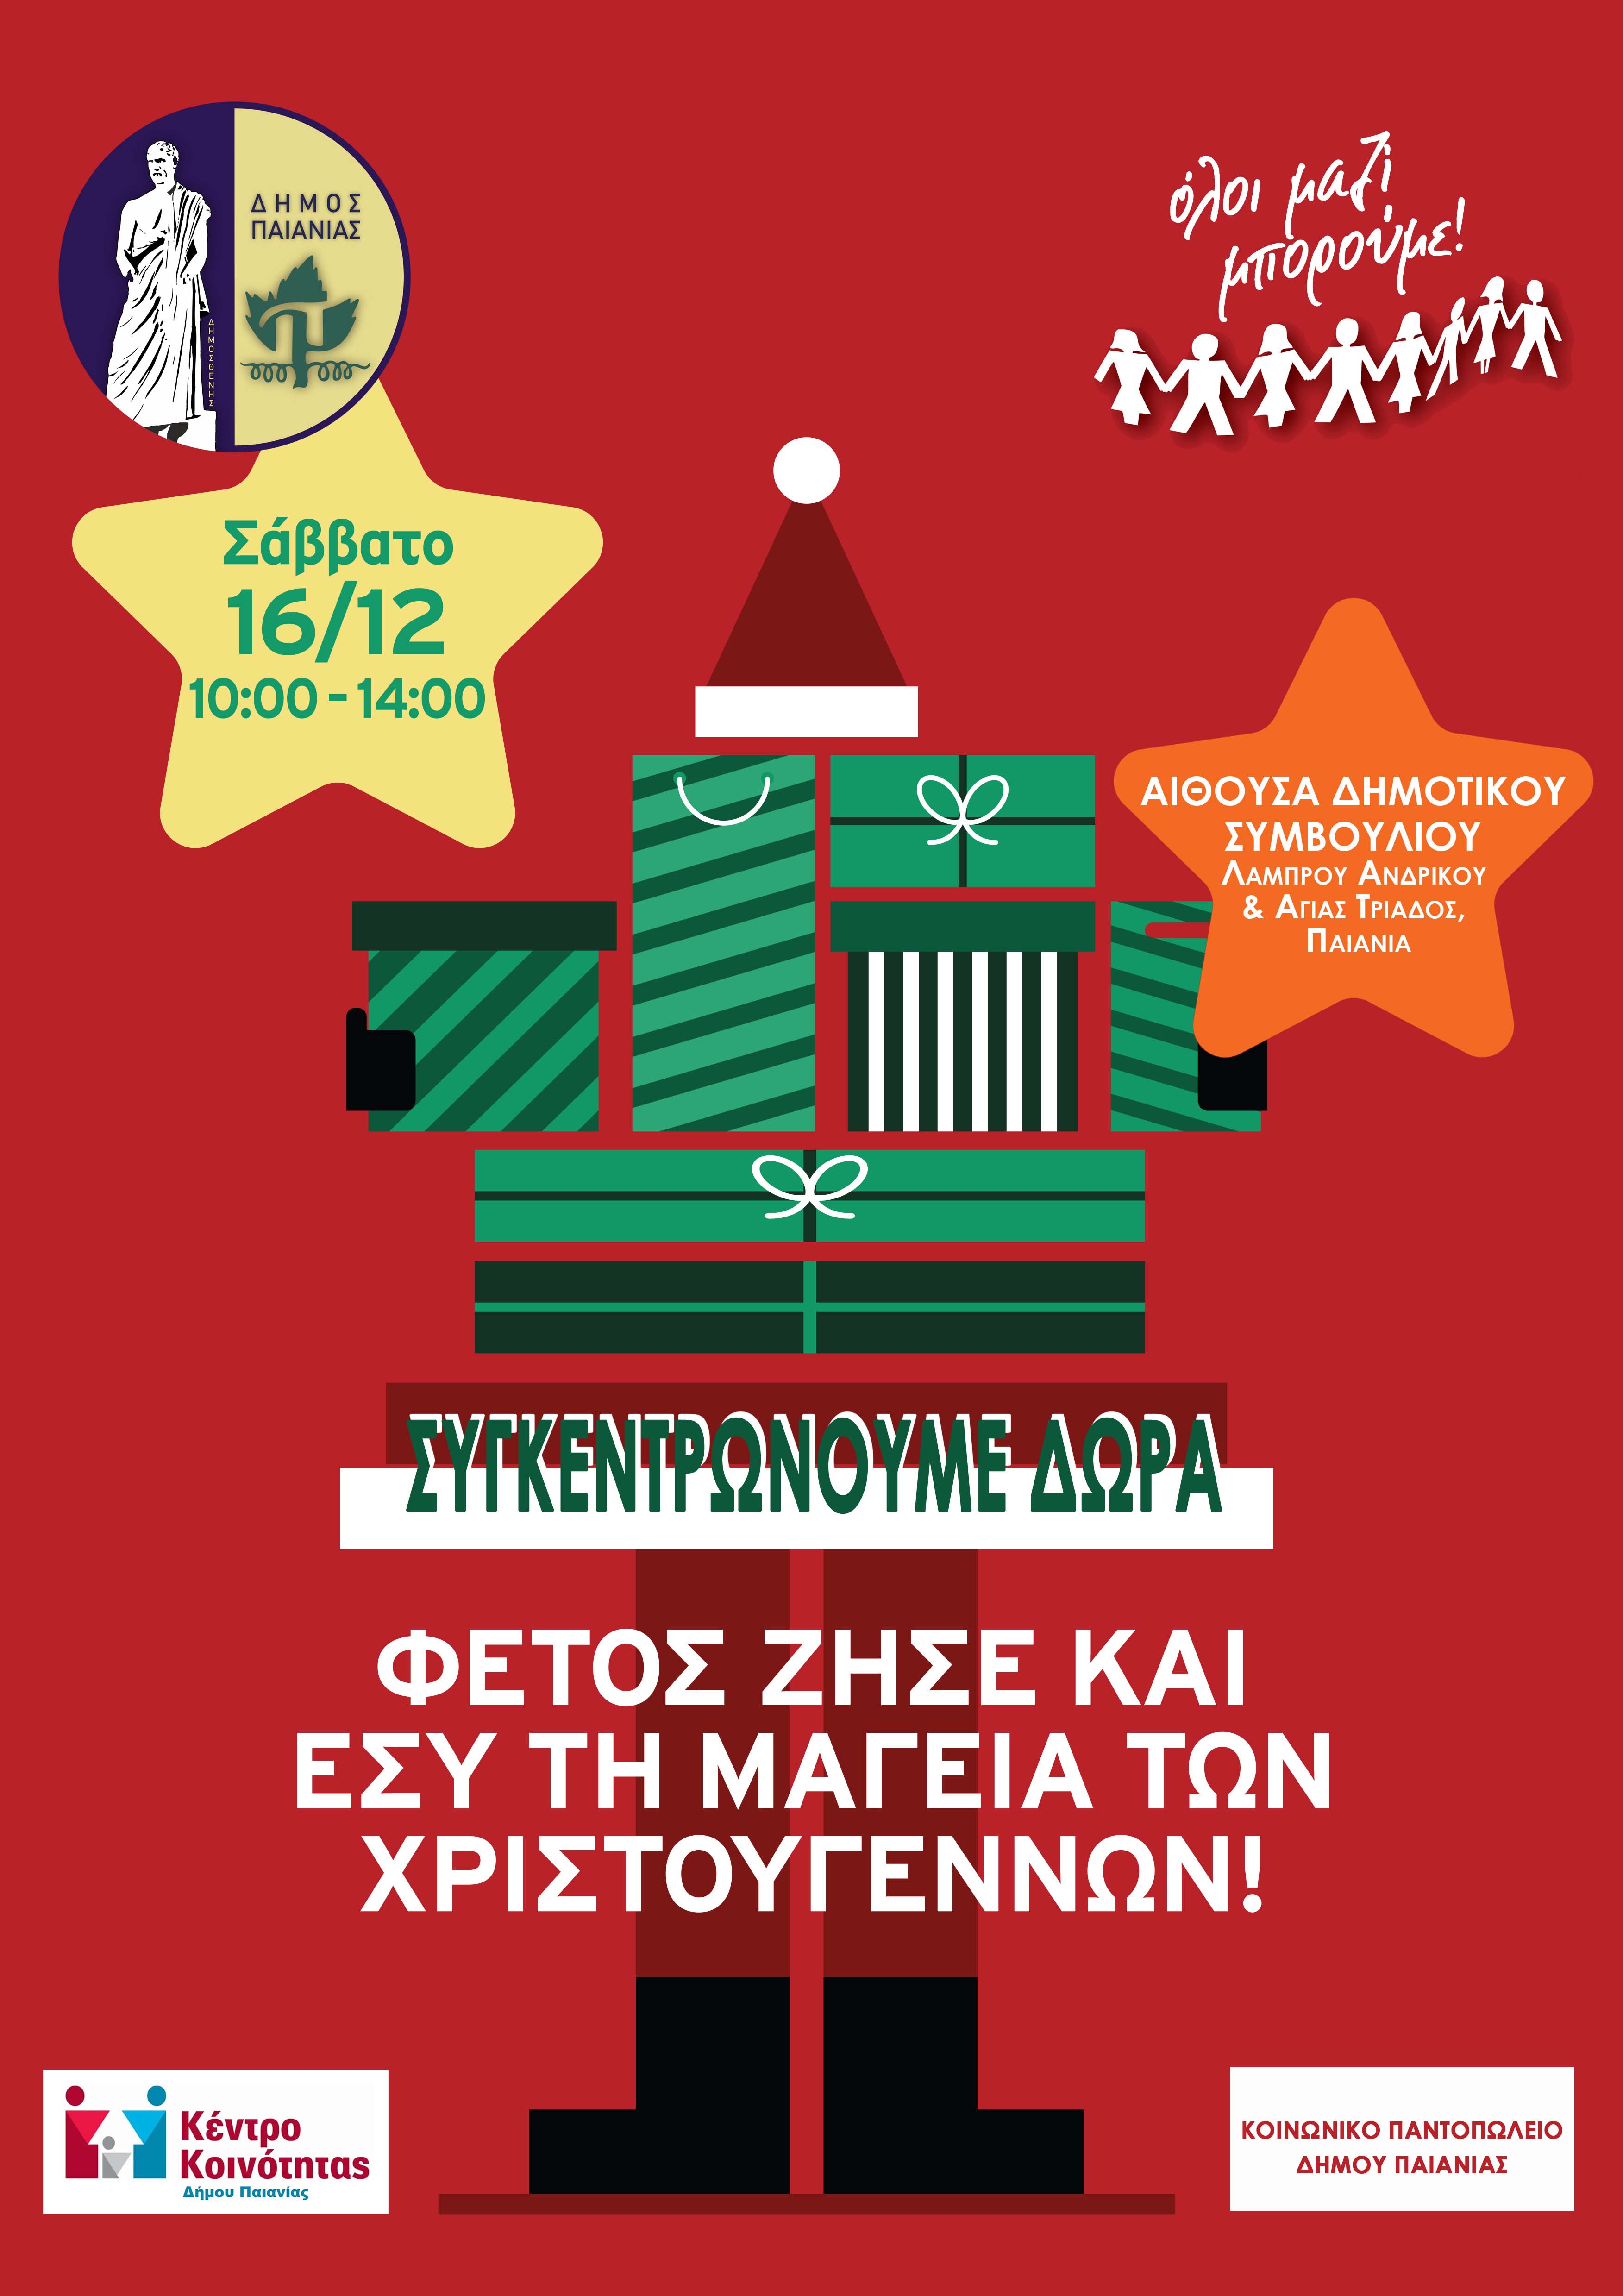 Δήμος Παιανίας: Συγκεντρώνουμε χριστουγεννιάτικα δώρα για τα παιδιά